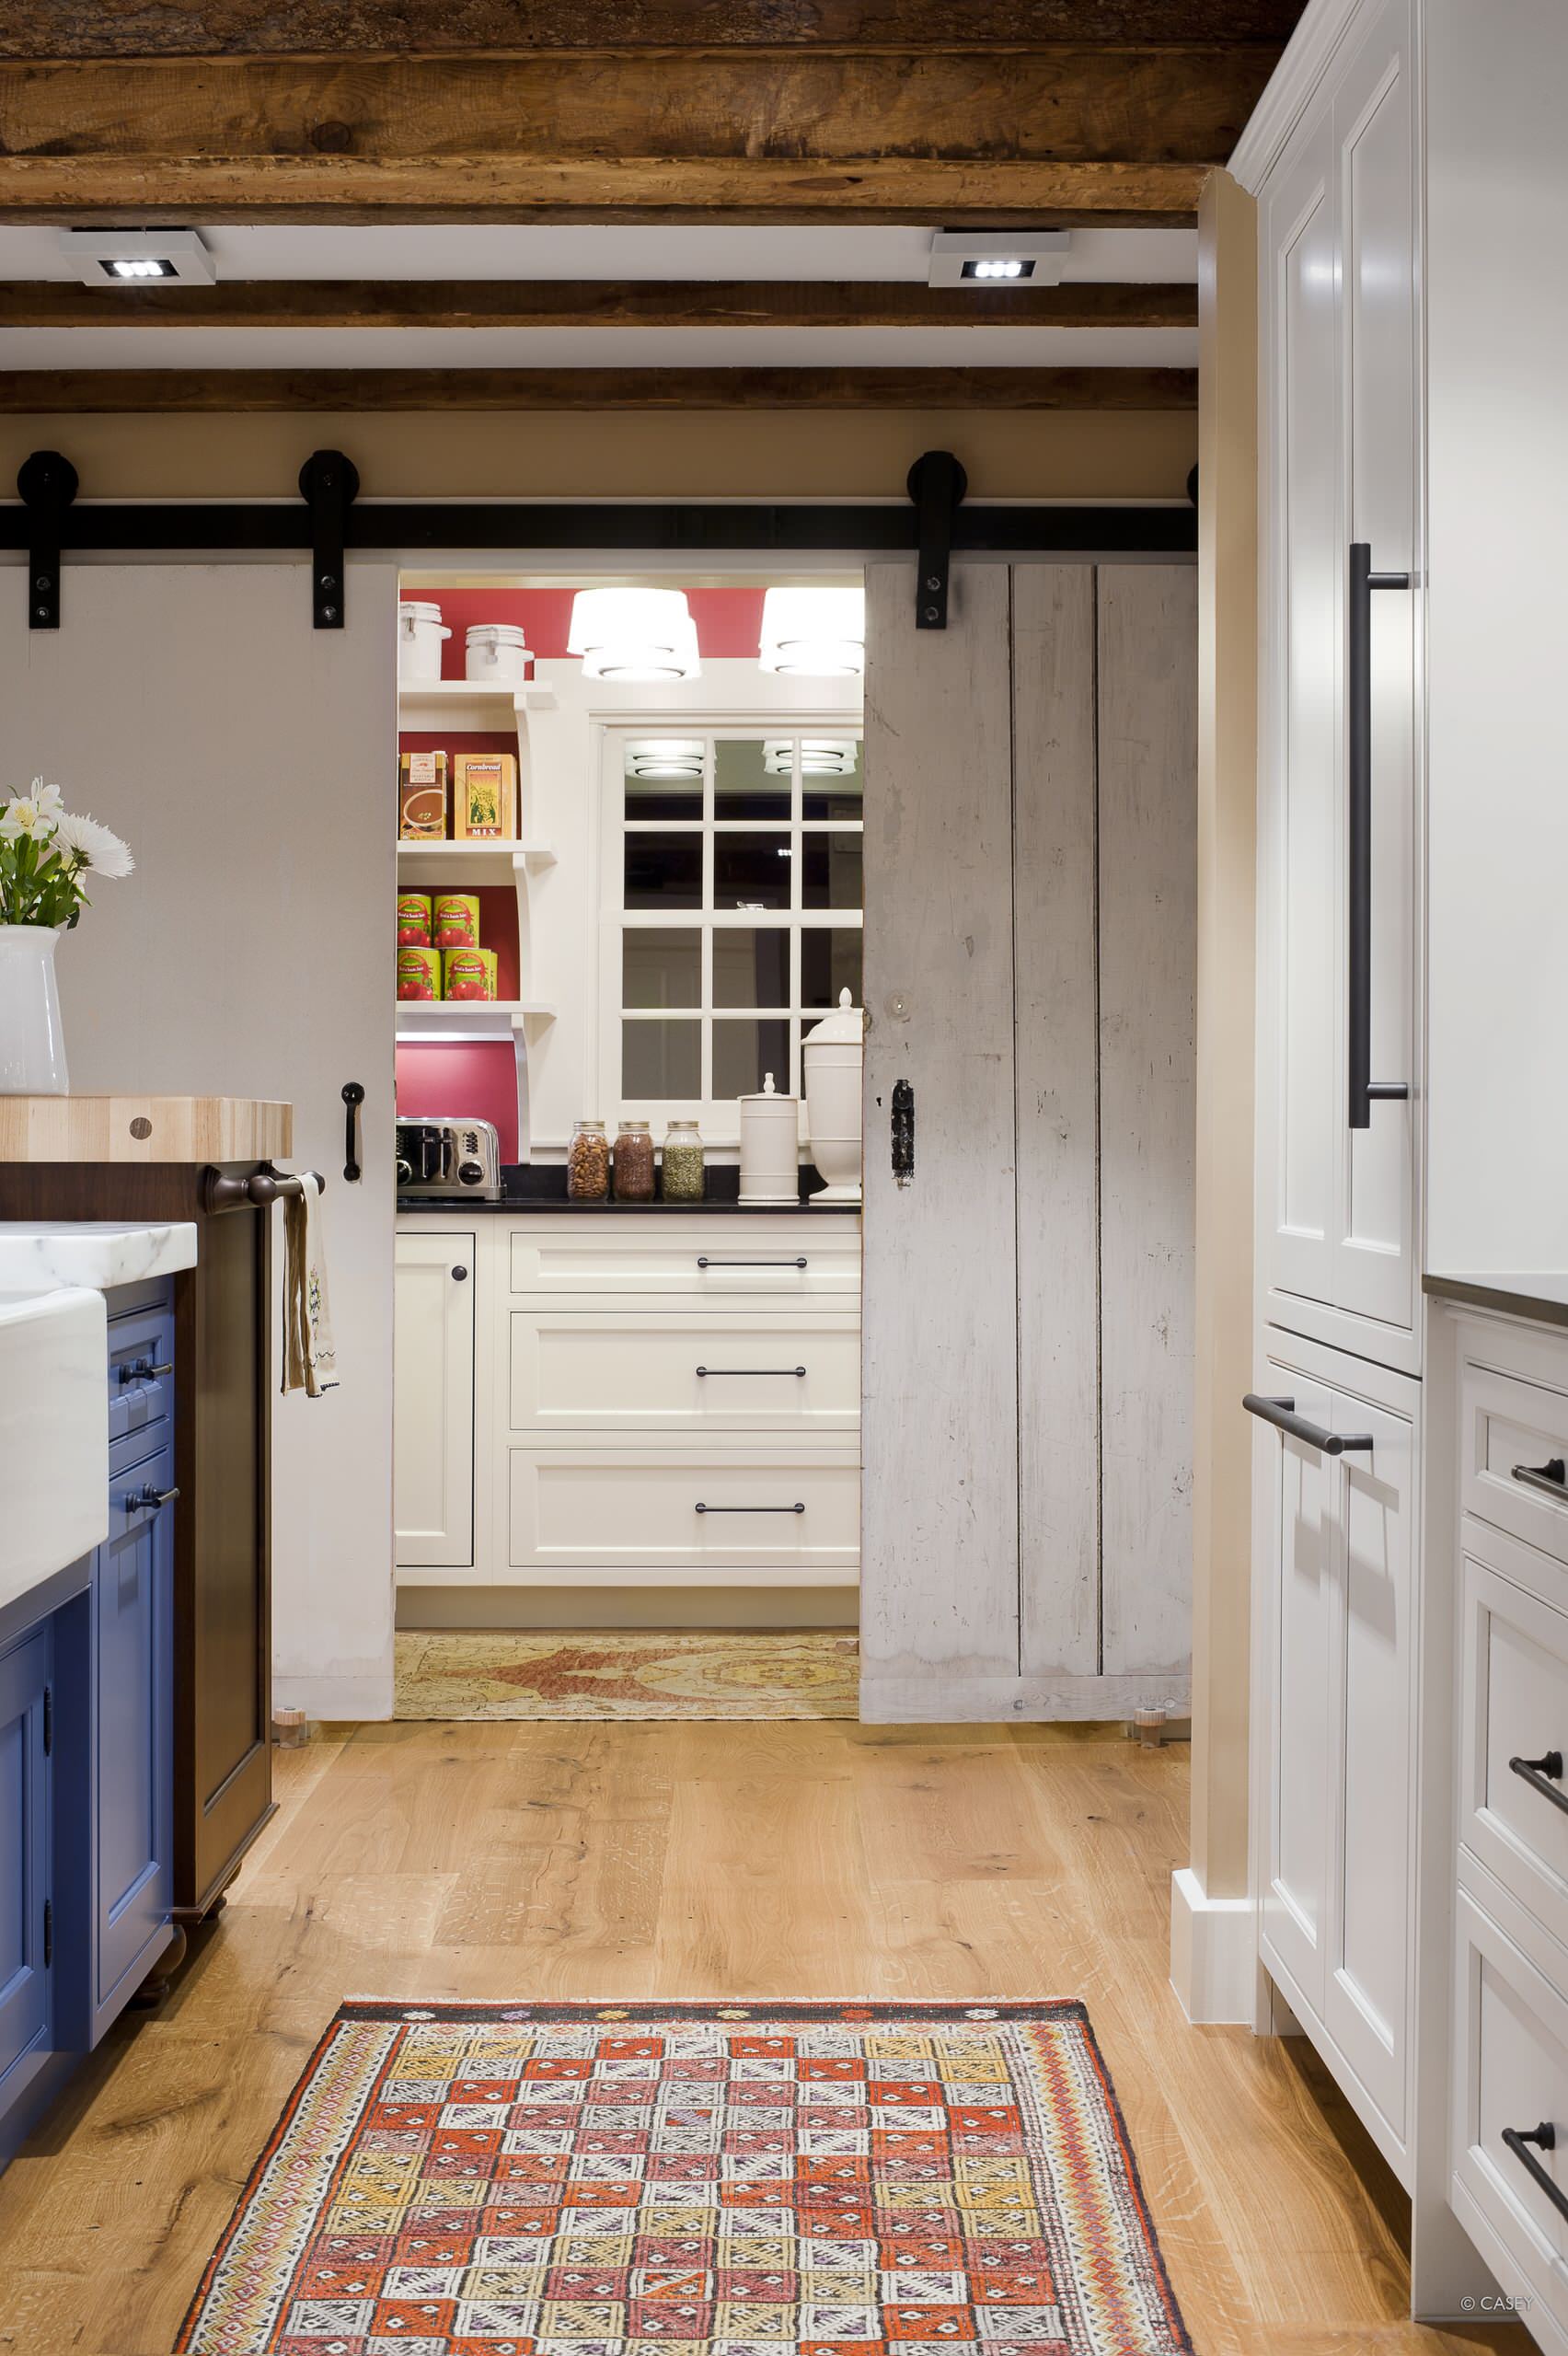 kitchen door: photos, designs & ideas